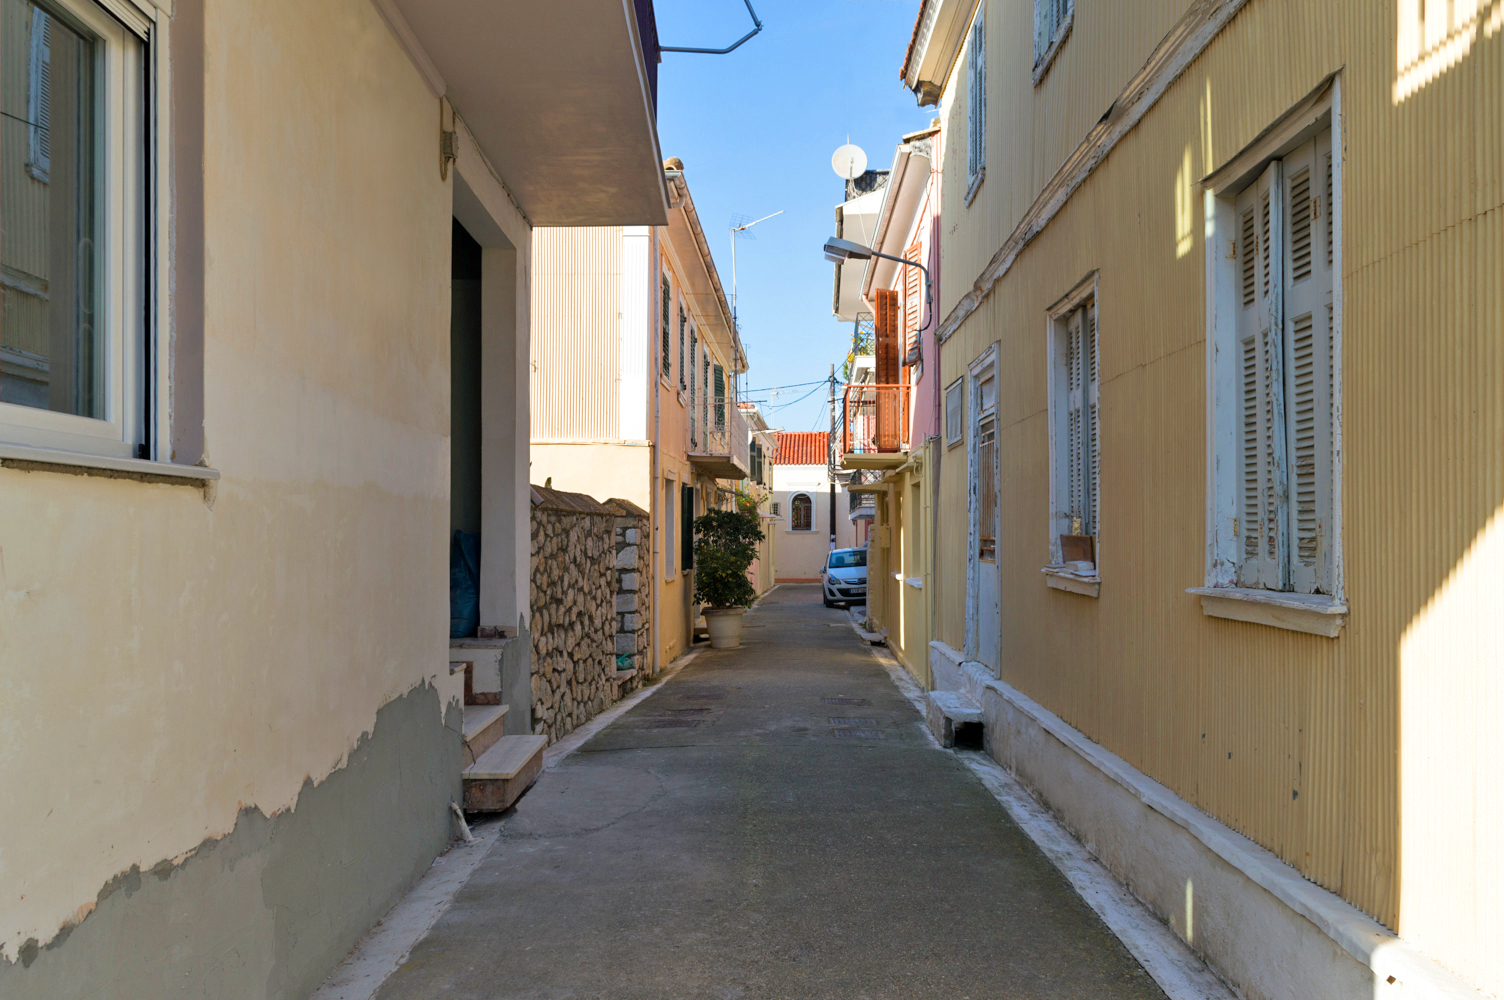 Γραφικό σοκάκι στην παλιά πόλη της Λευκάδας | Lefkada Slow Guide